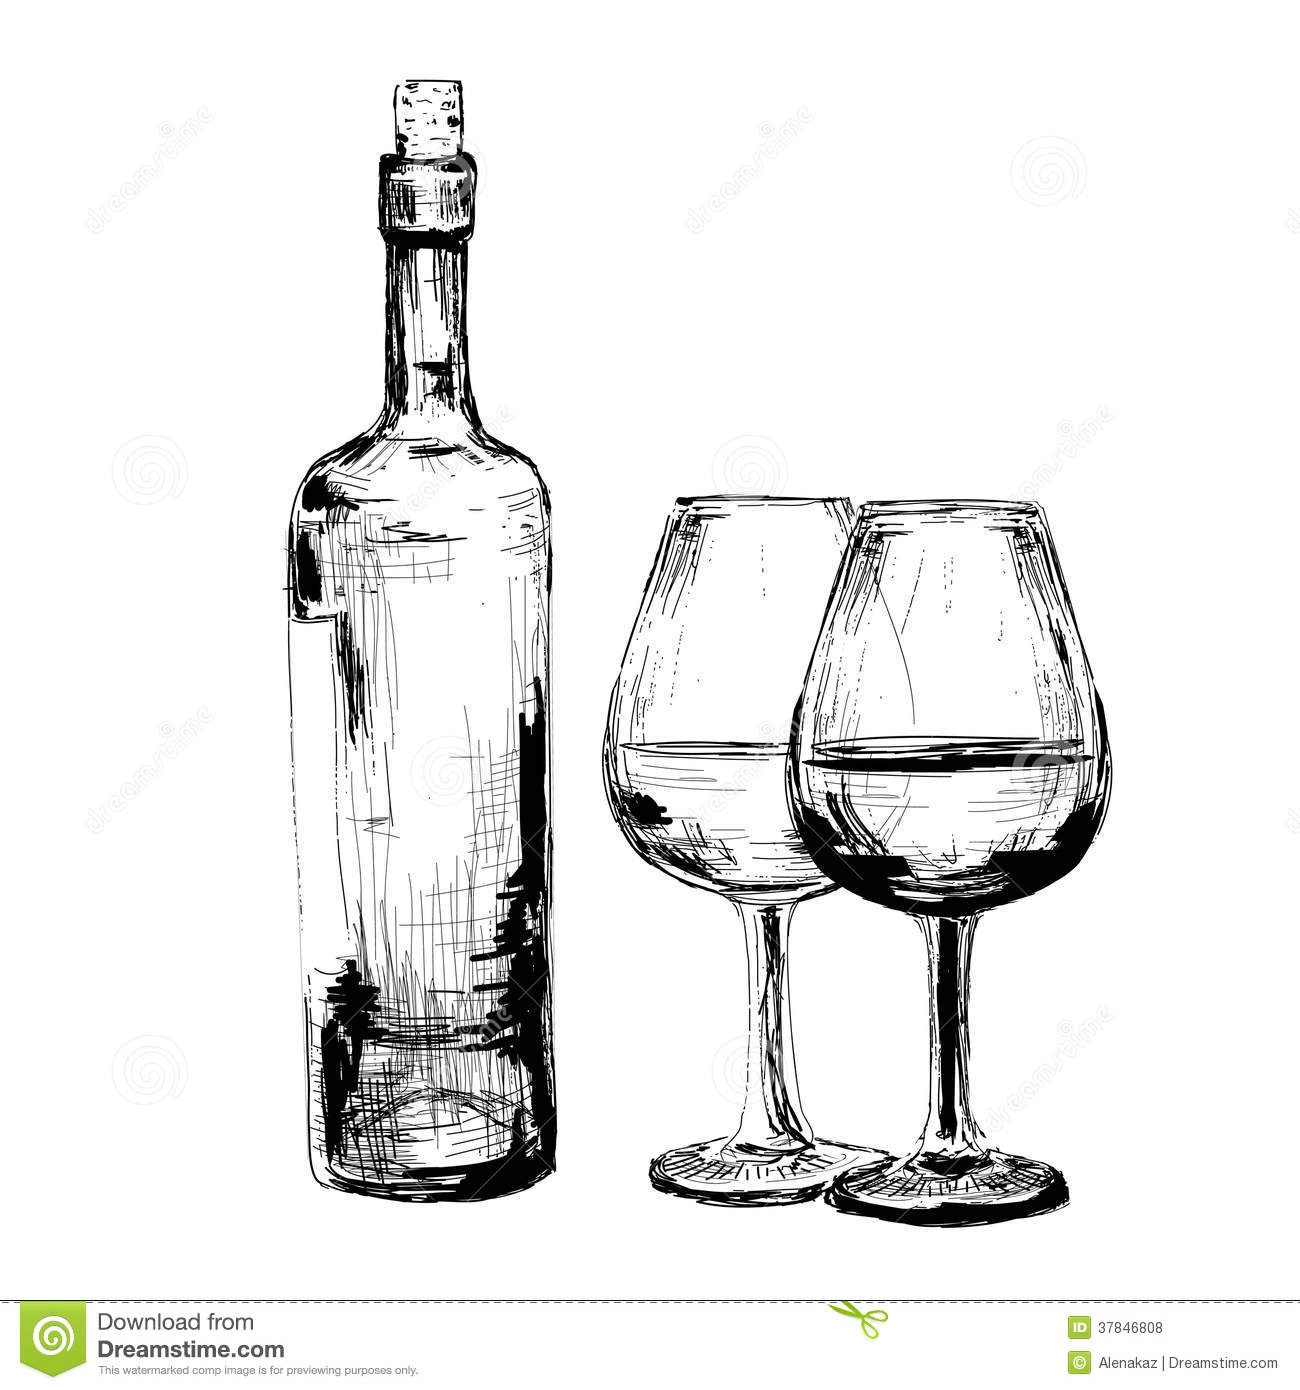 Bouteille De Vin Et De Deux Verres Illustration De Vecteur pour Coloriage Dessin Bouteille De Vin